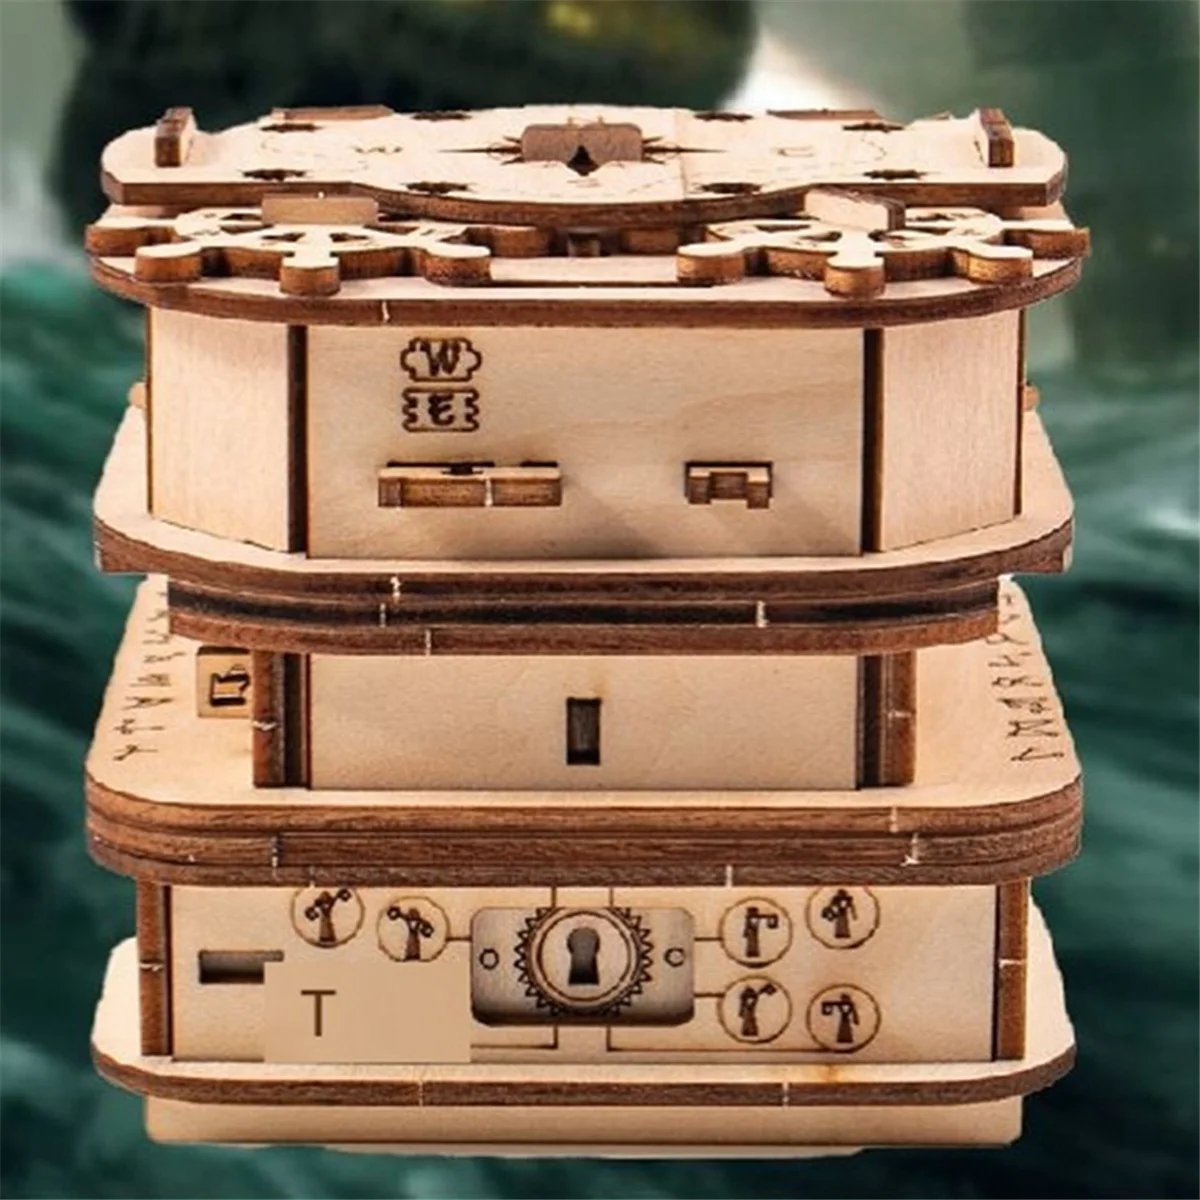 Davy Jones'Locker 퍼즐 상자, 선물 상자, 나무 퍼즐, 성인용 나무 퍼즐, 두뇌 티저, 남성용 생일 선물 도구